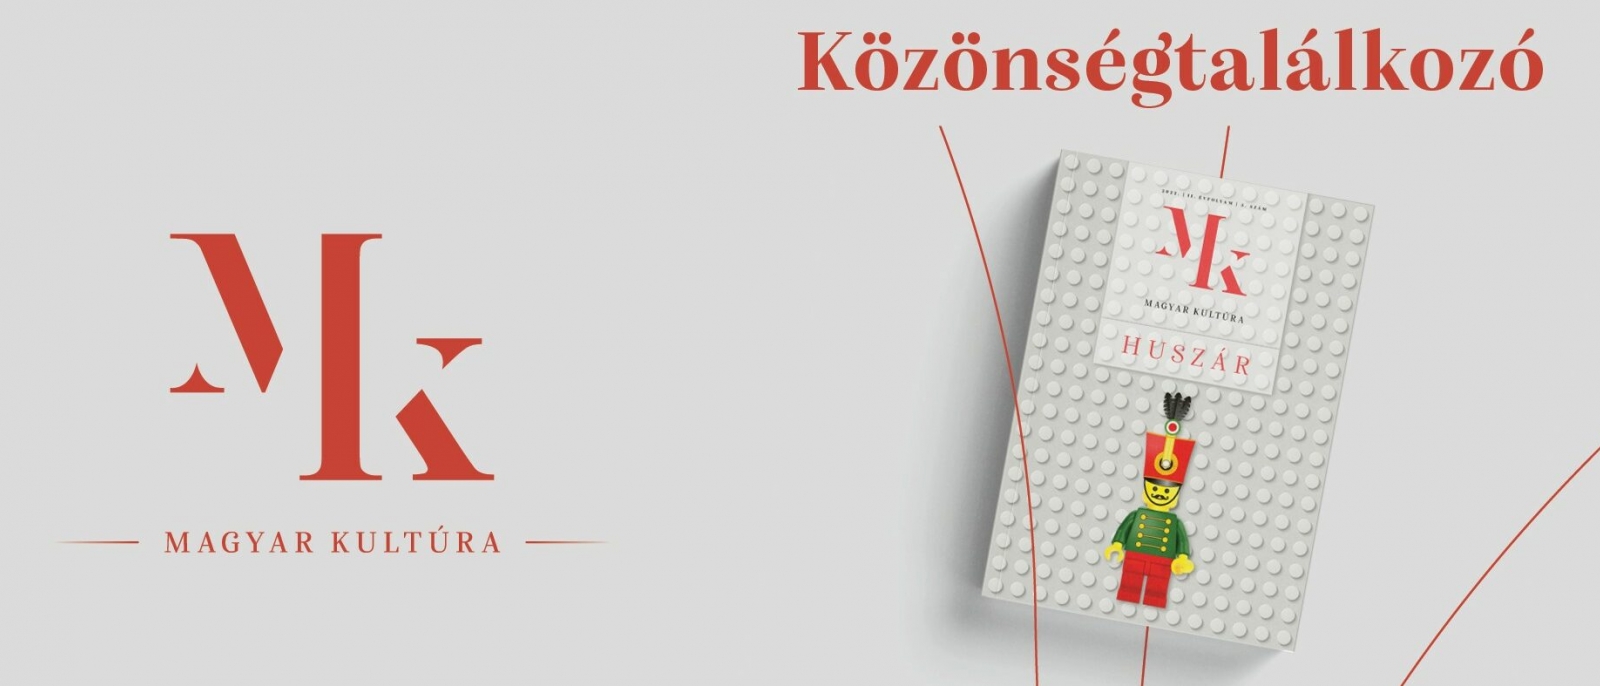 A Magyar Kultúra magazin közönségtalálkozója